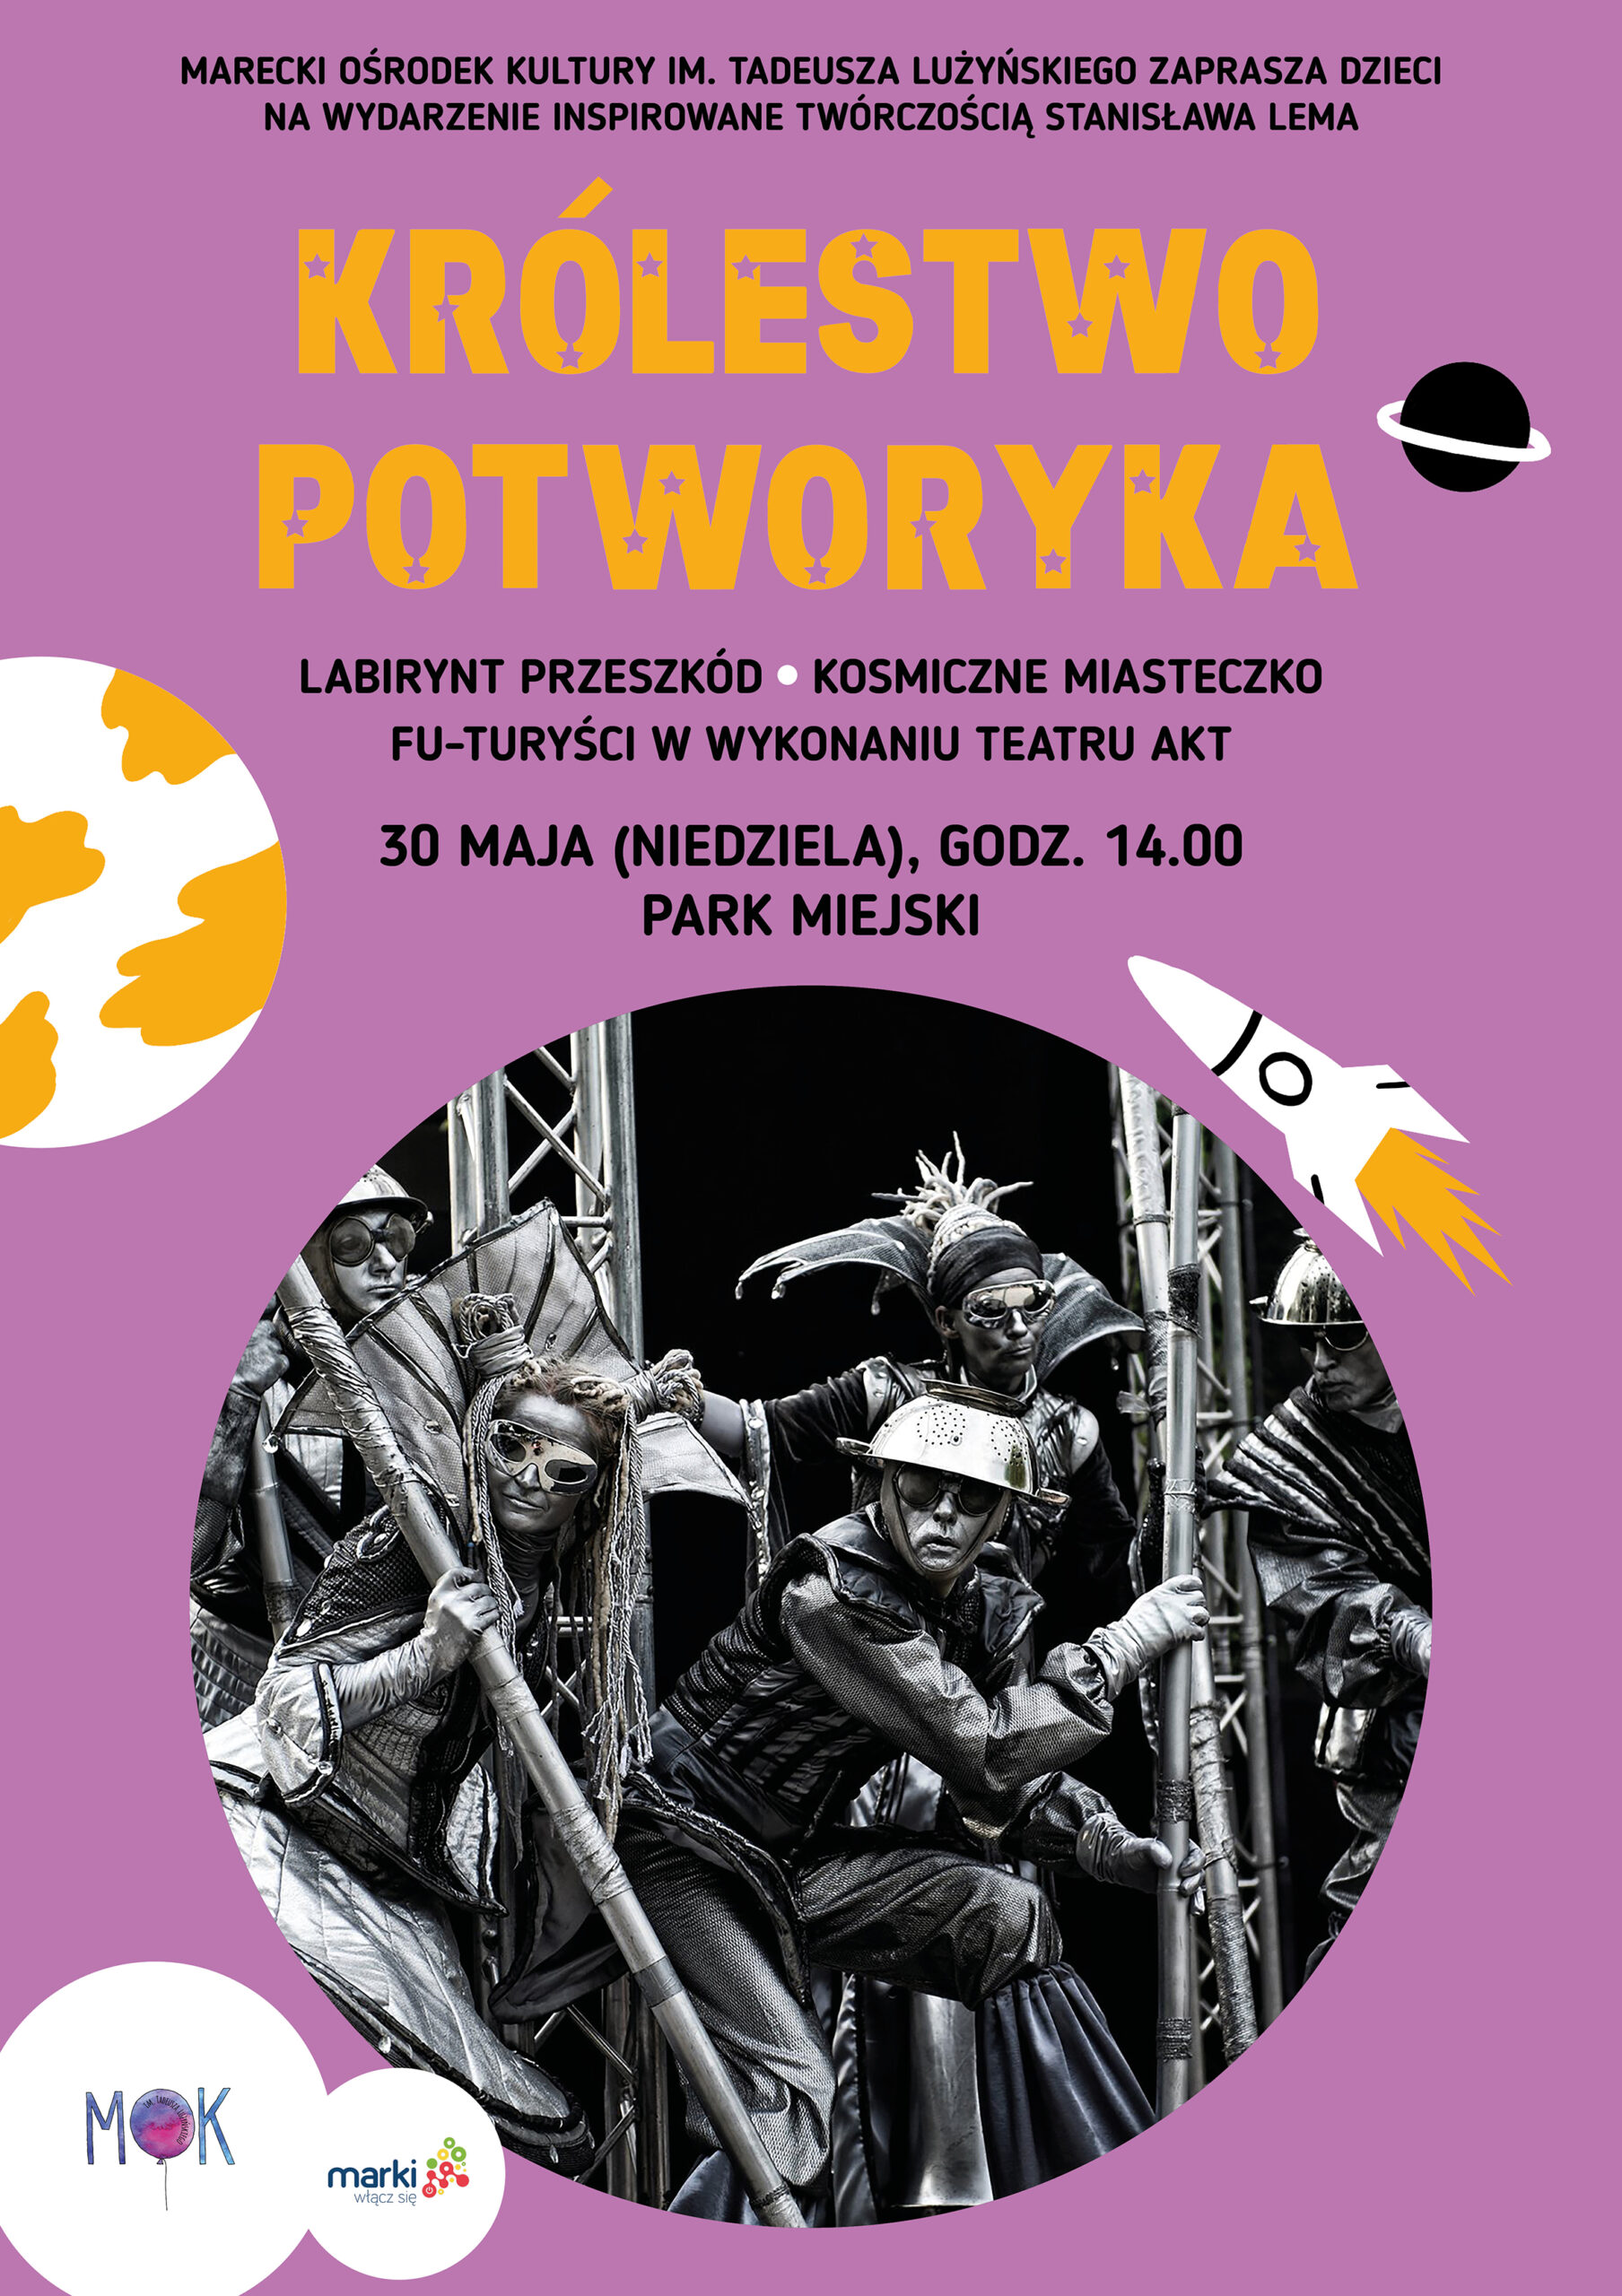 MOK w Markach zaprasza dzieci na wydarzenie inspirowane twórczością Stanisława Lema Królestwo Potworyka 30 maja o godzinie 14 w parku miejskim